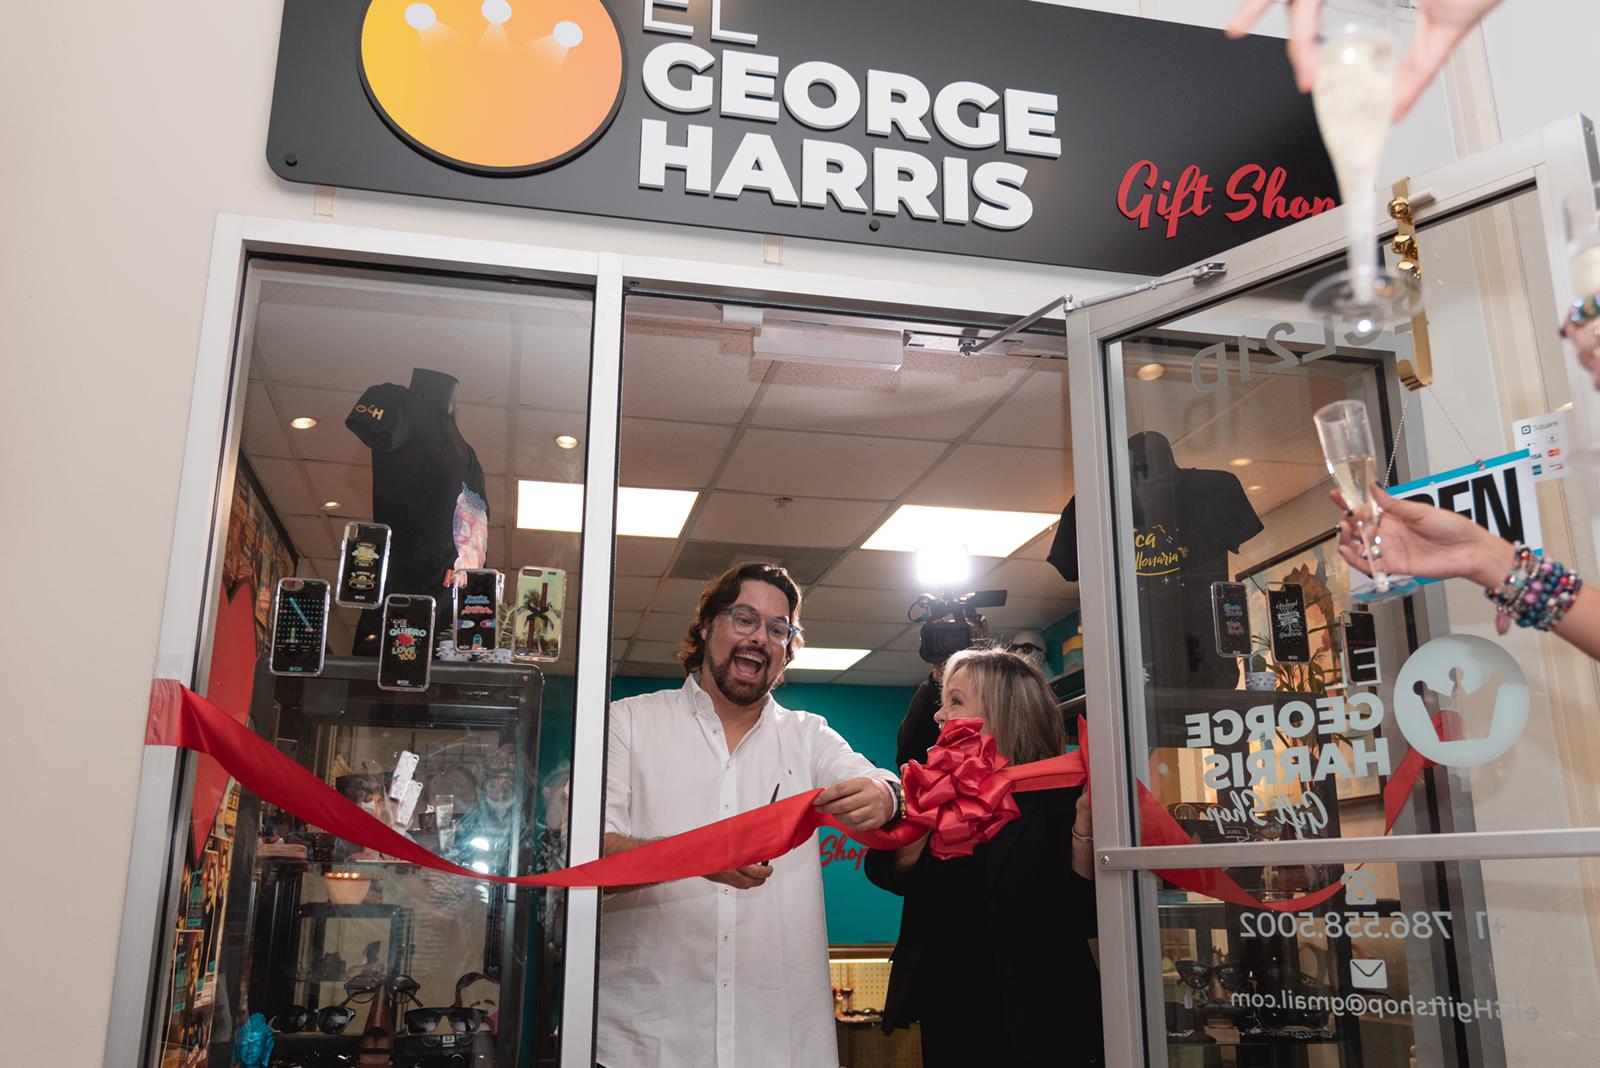 El George Harrys Gift Shop vende con humor y elegancia